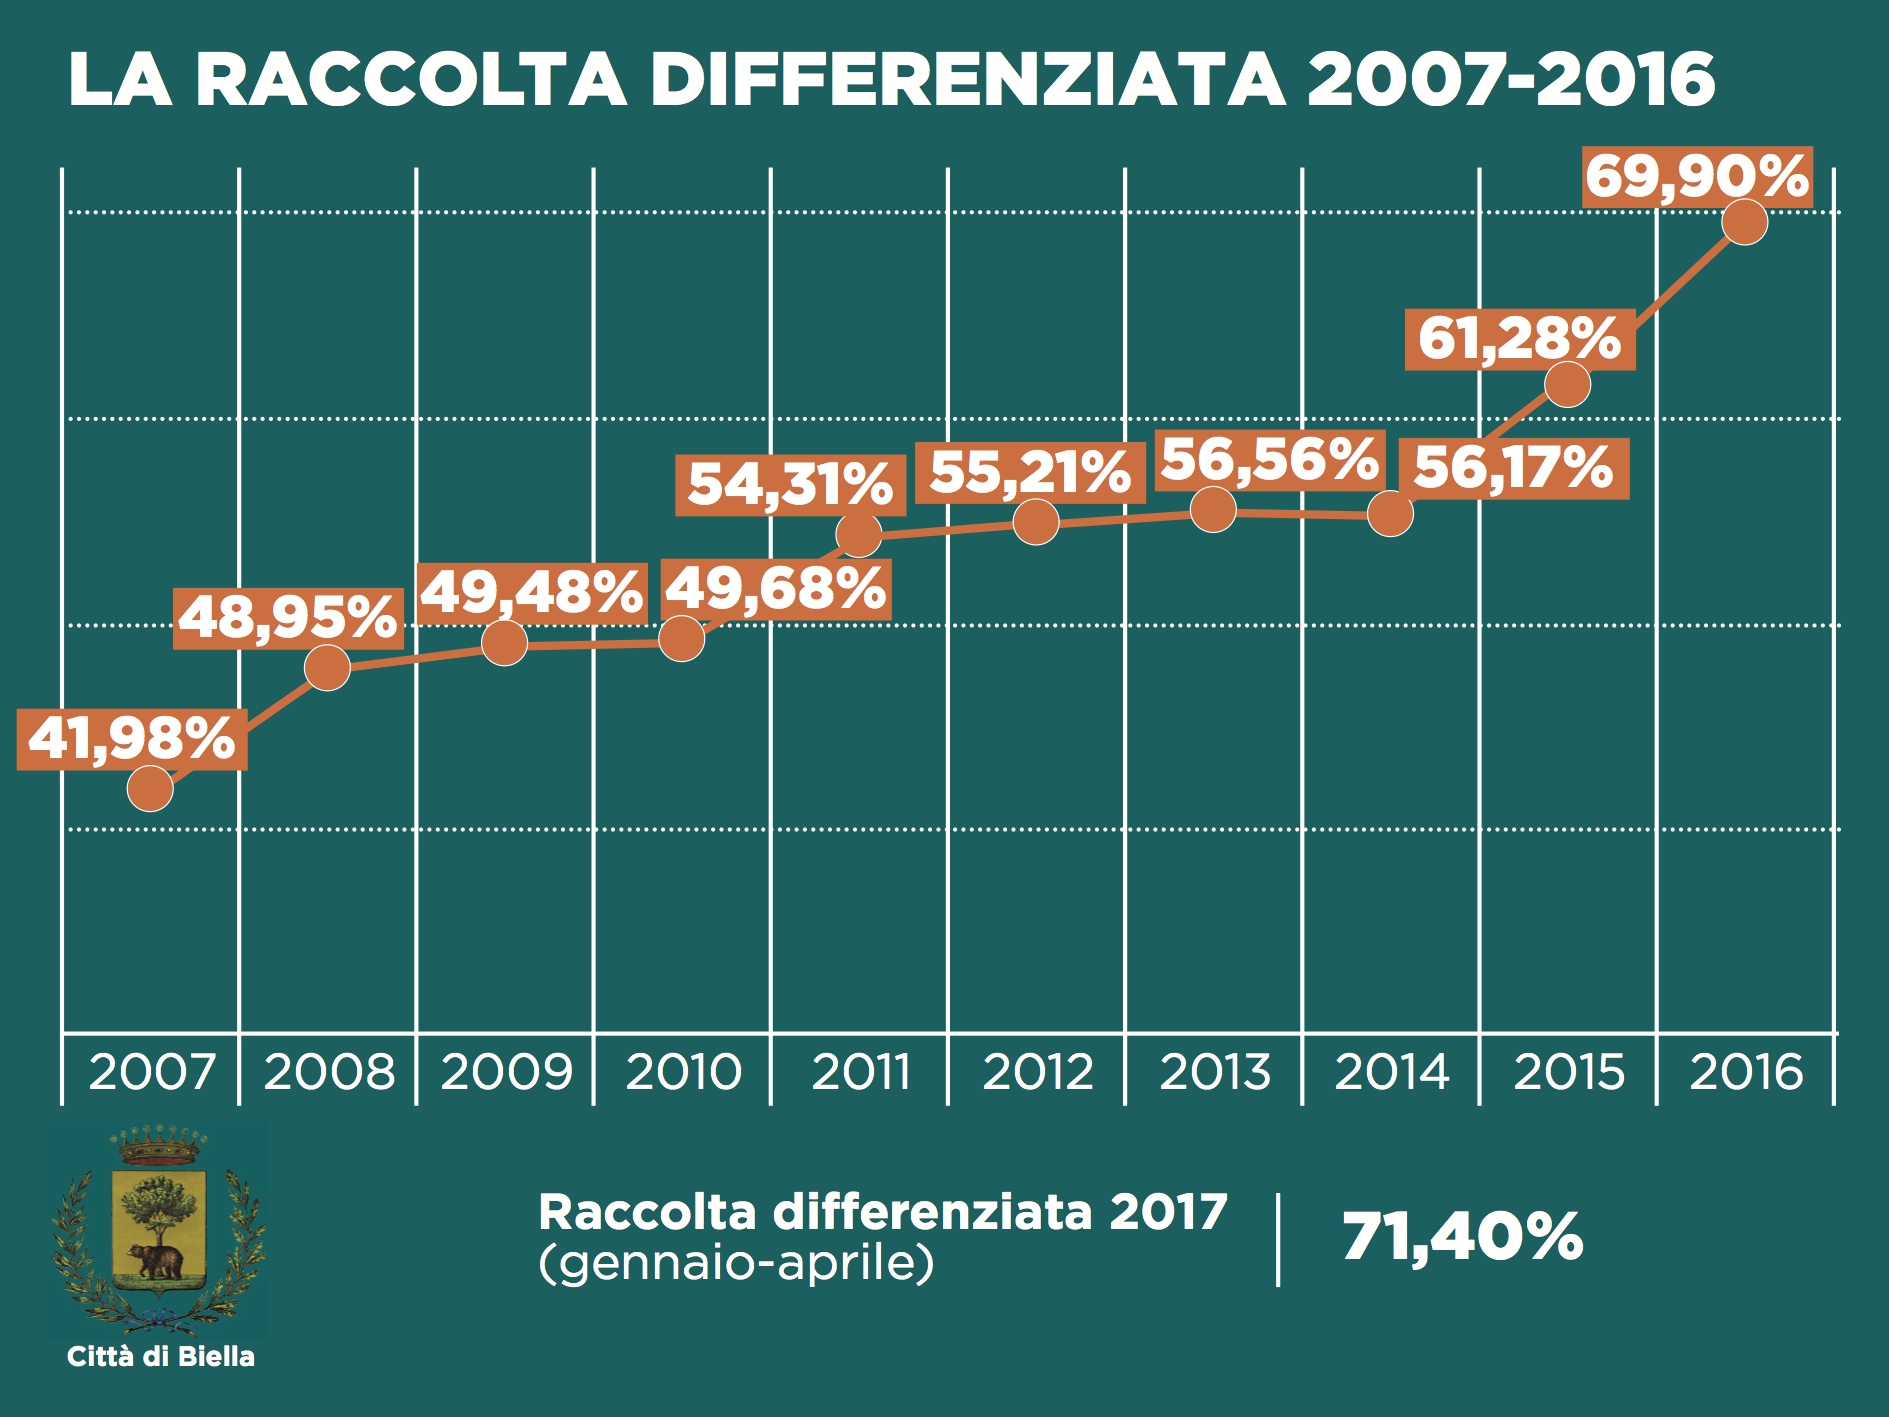 La raccolta differenziata a Biella tra il 2007 e il 2016